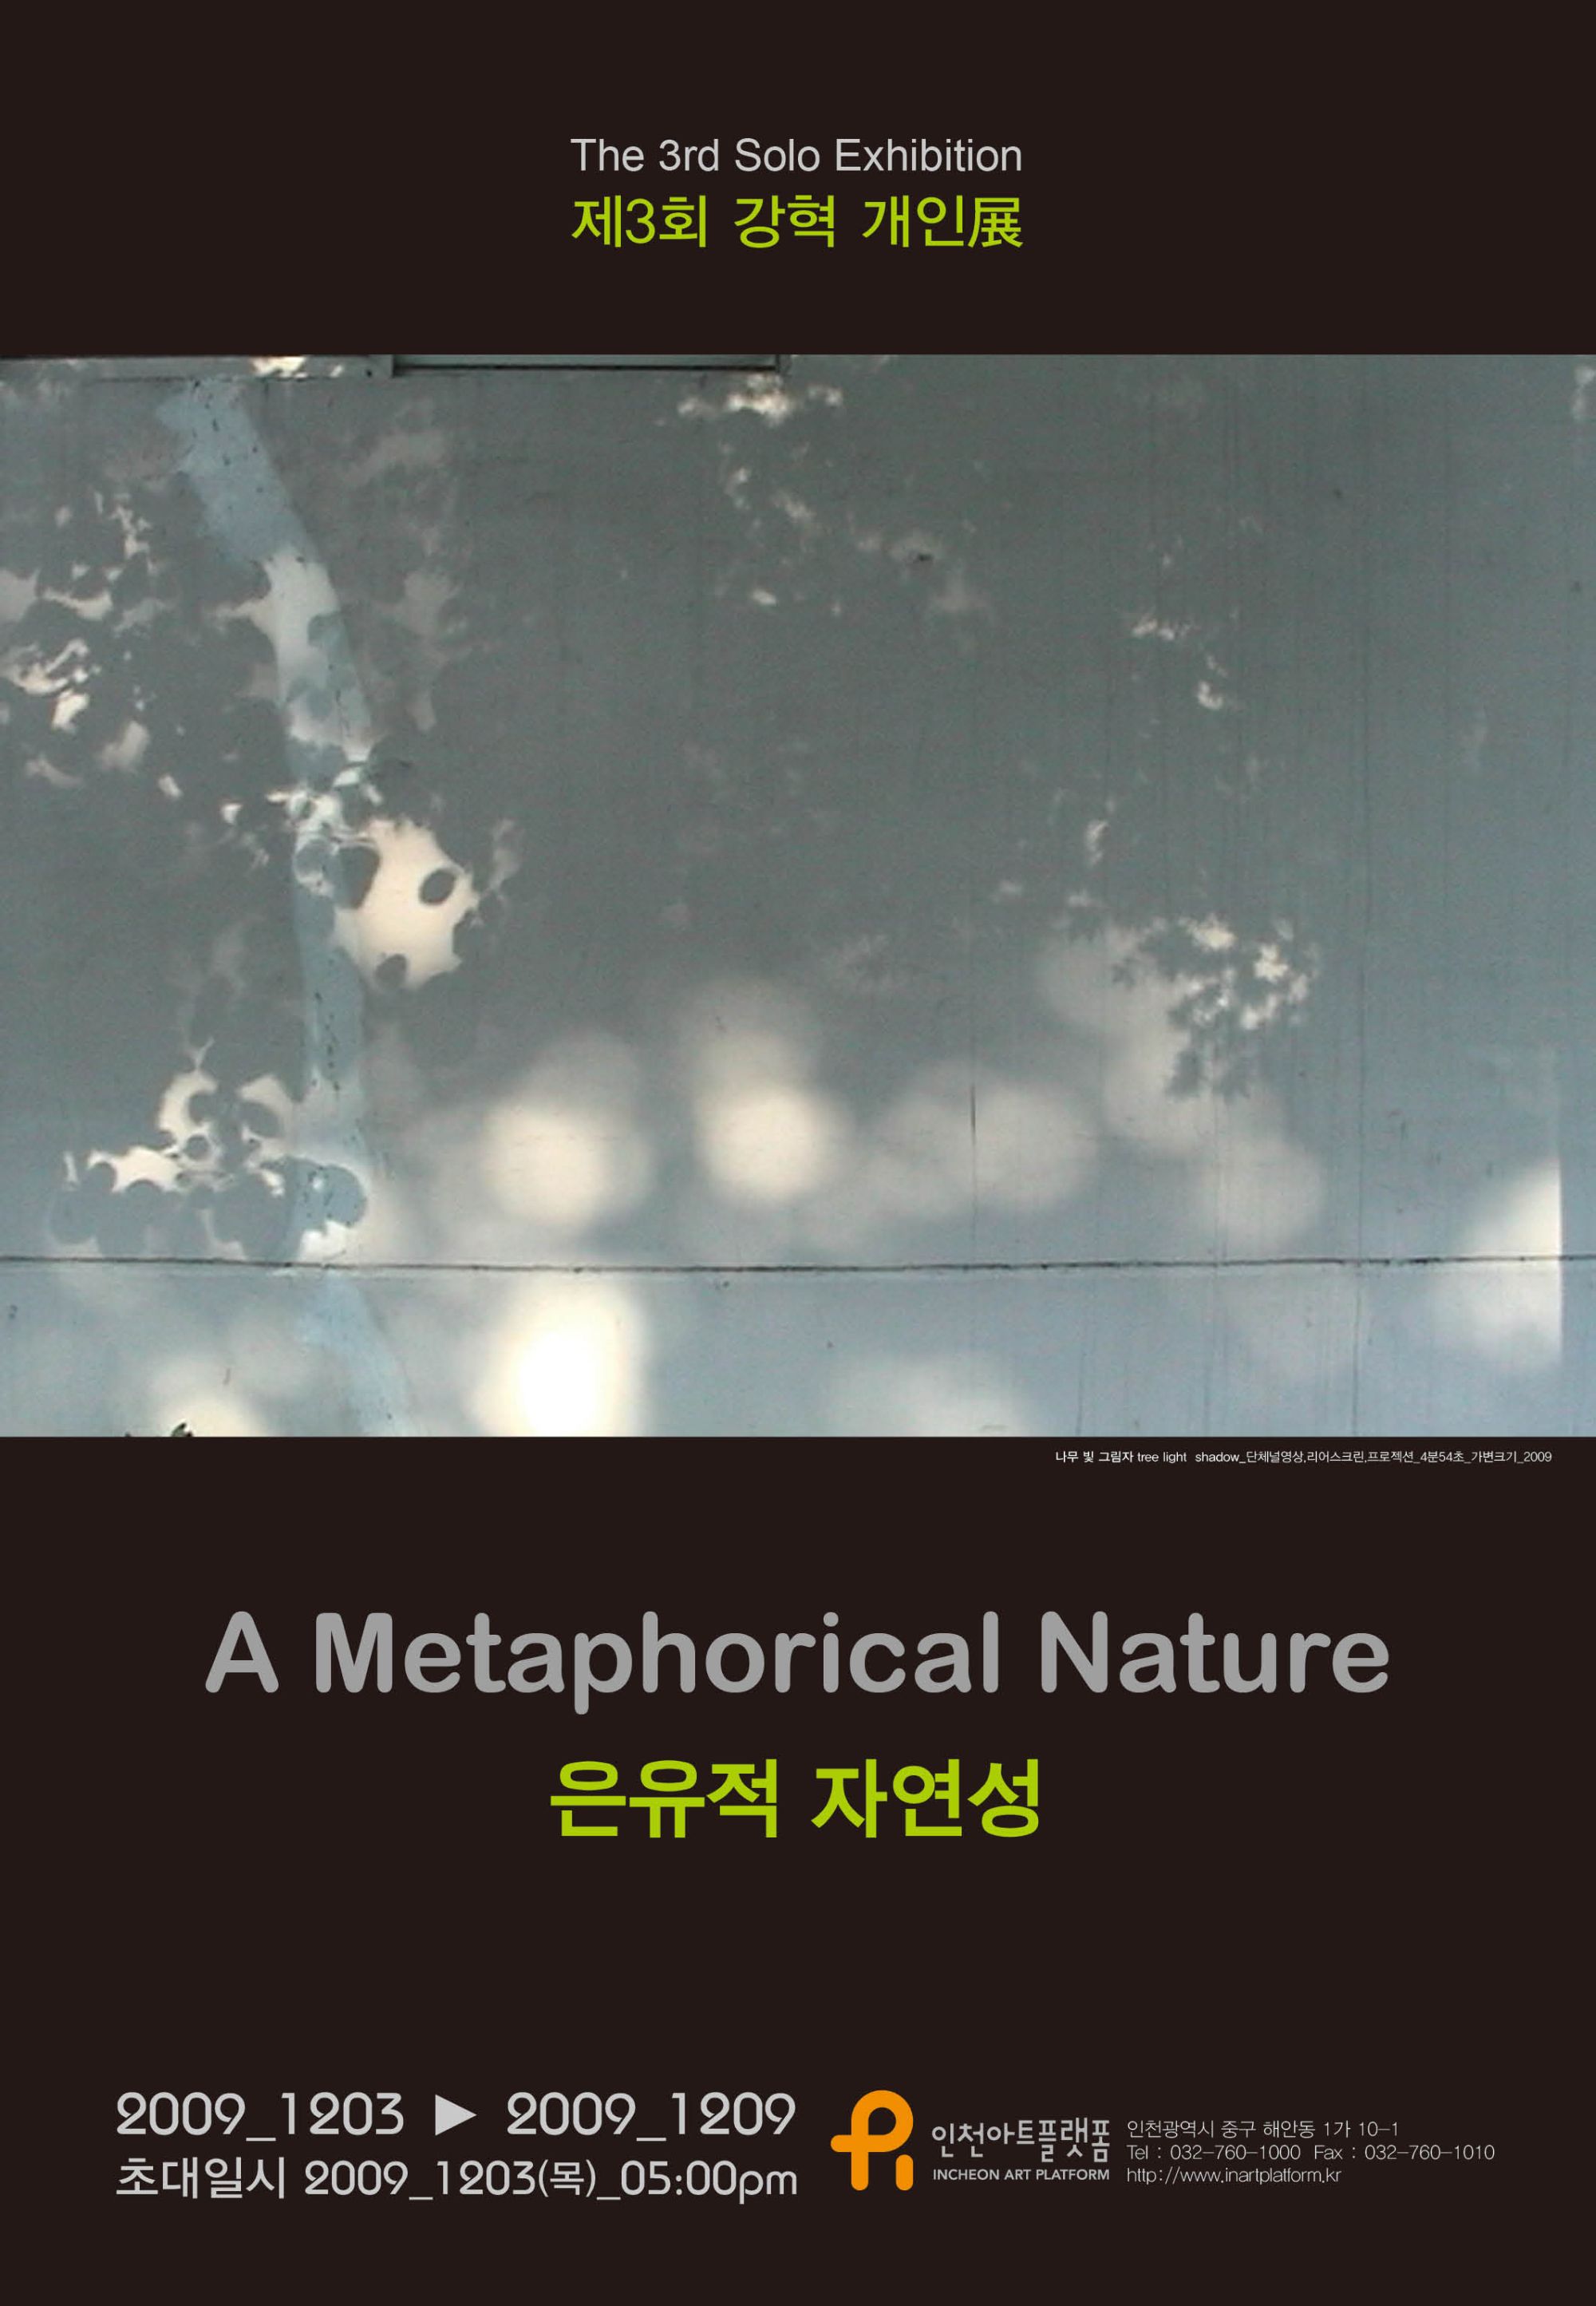 강혁 개인전_은유적 자연성 A Metaphorical Nature_2009. 12. 3 ~ 12. 9_인천아트플랫폼